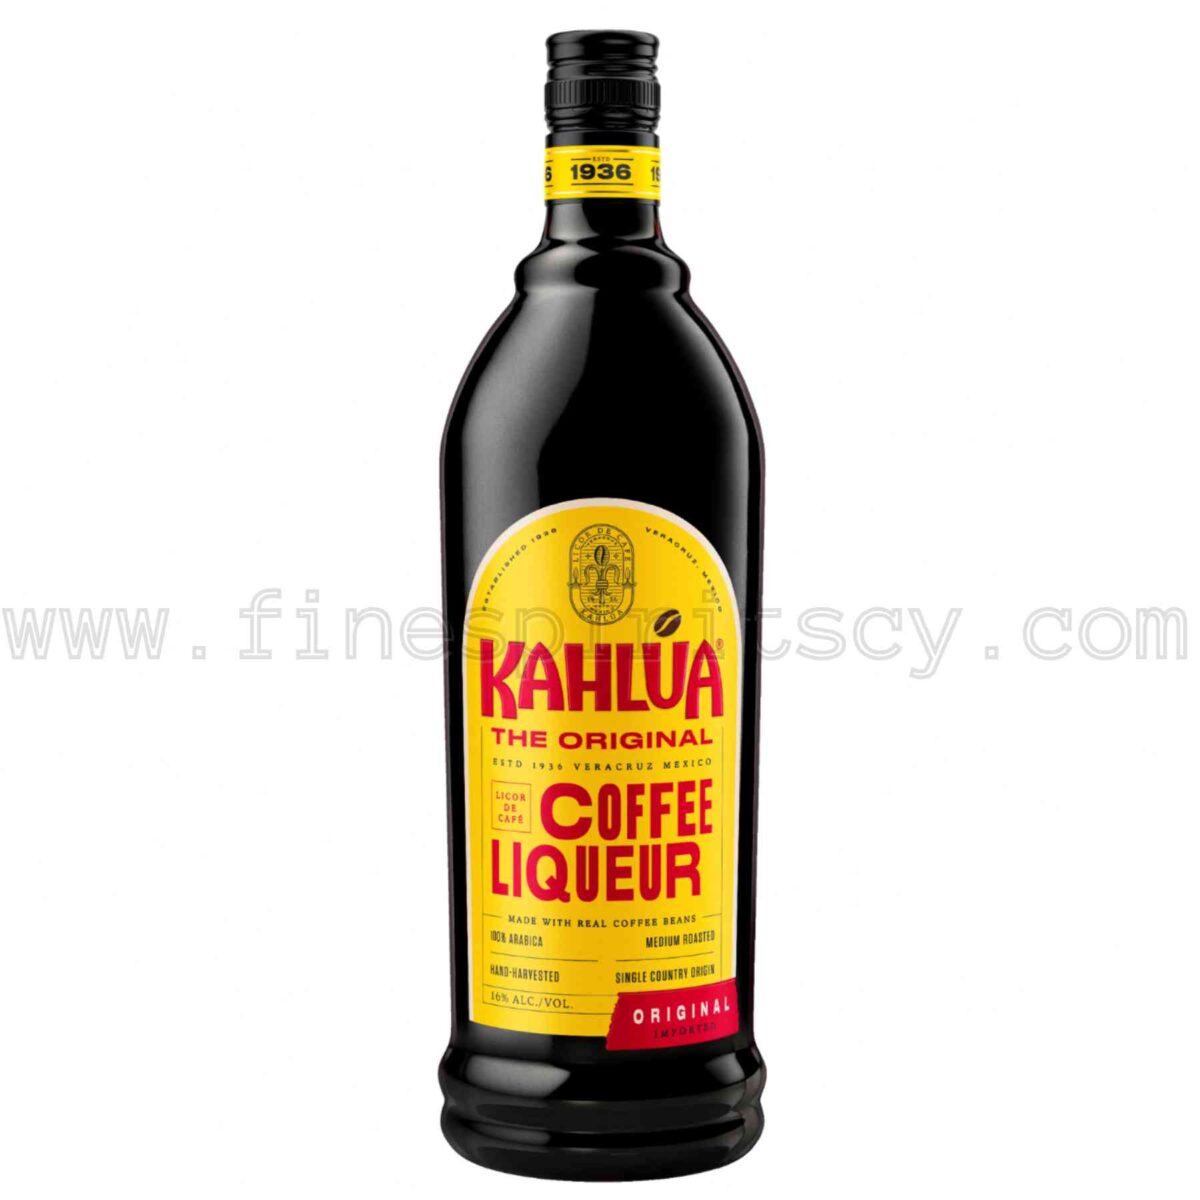 Kahlua The Original Coffee Liqueur